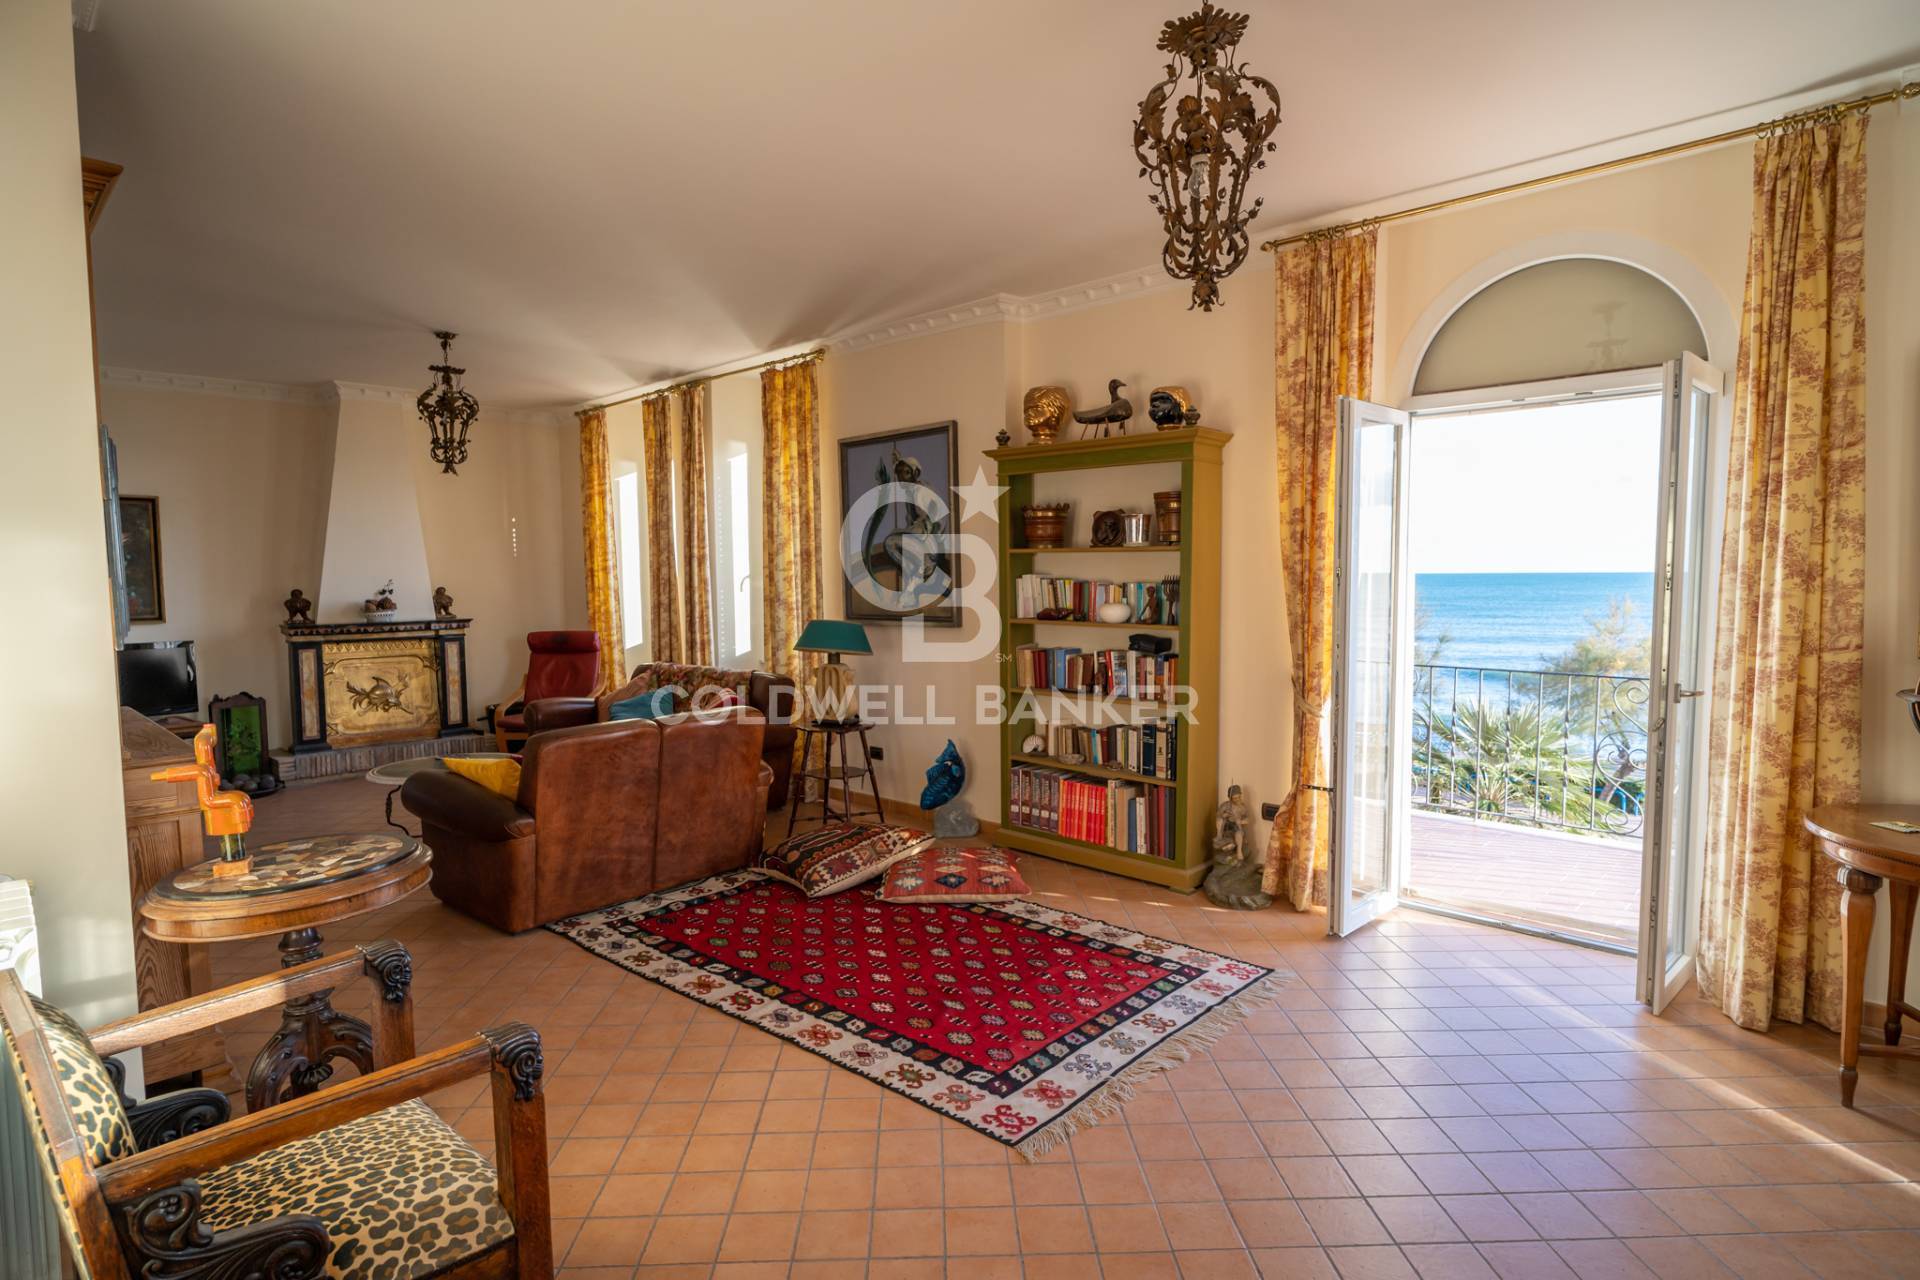 Villa in vendita a Santa Marinella, 6 locali, zona Località: Capolinaro, prezzo € 700.000 | CambioCasa.it